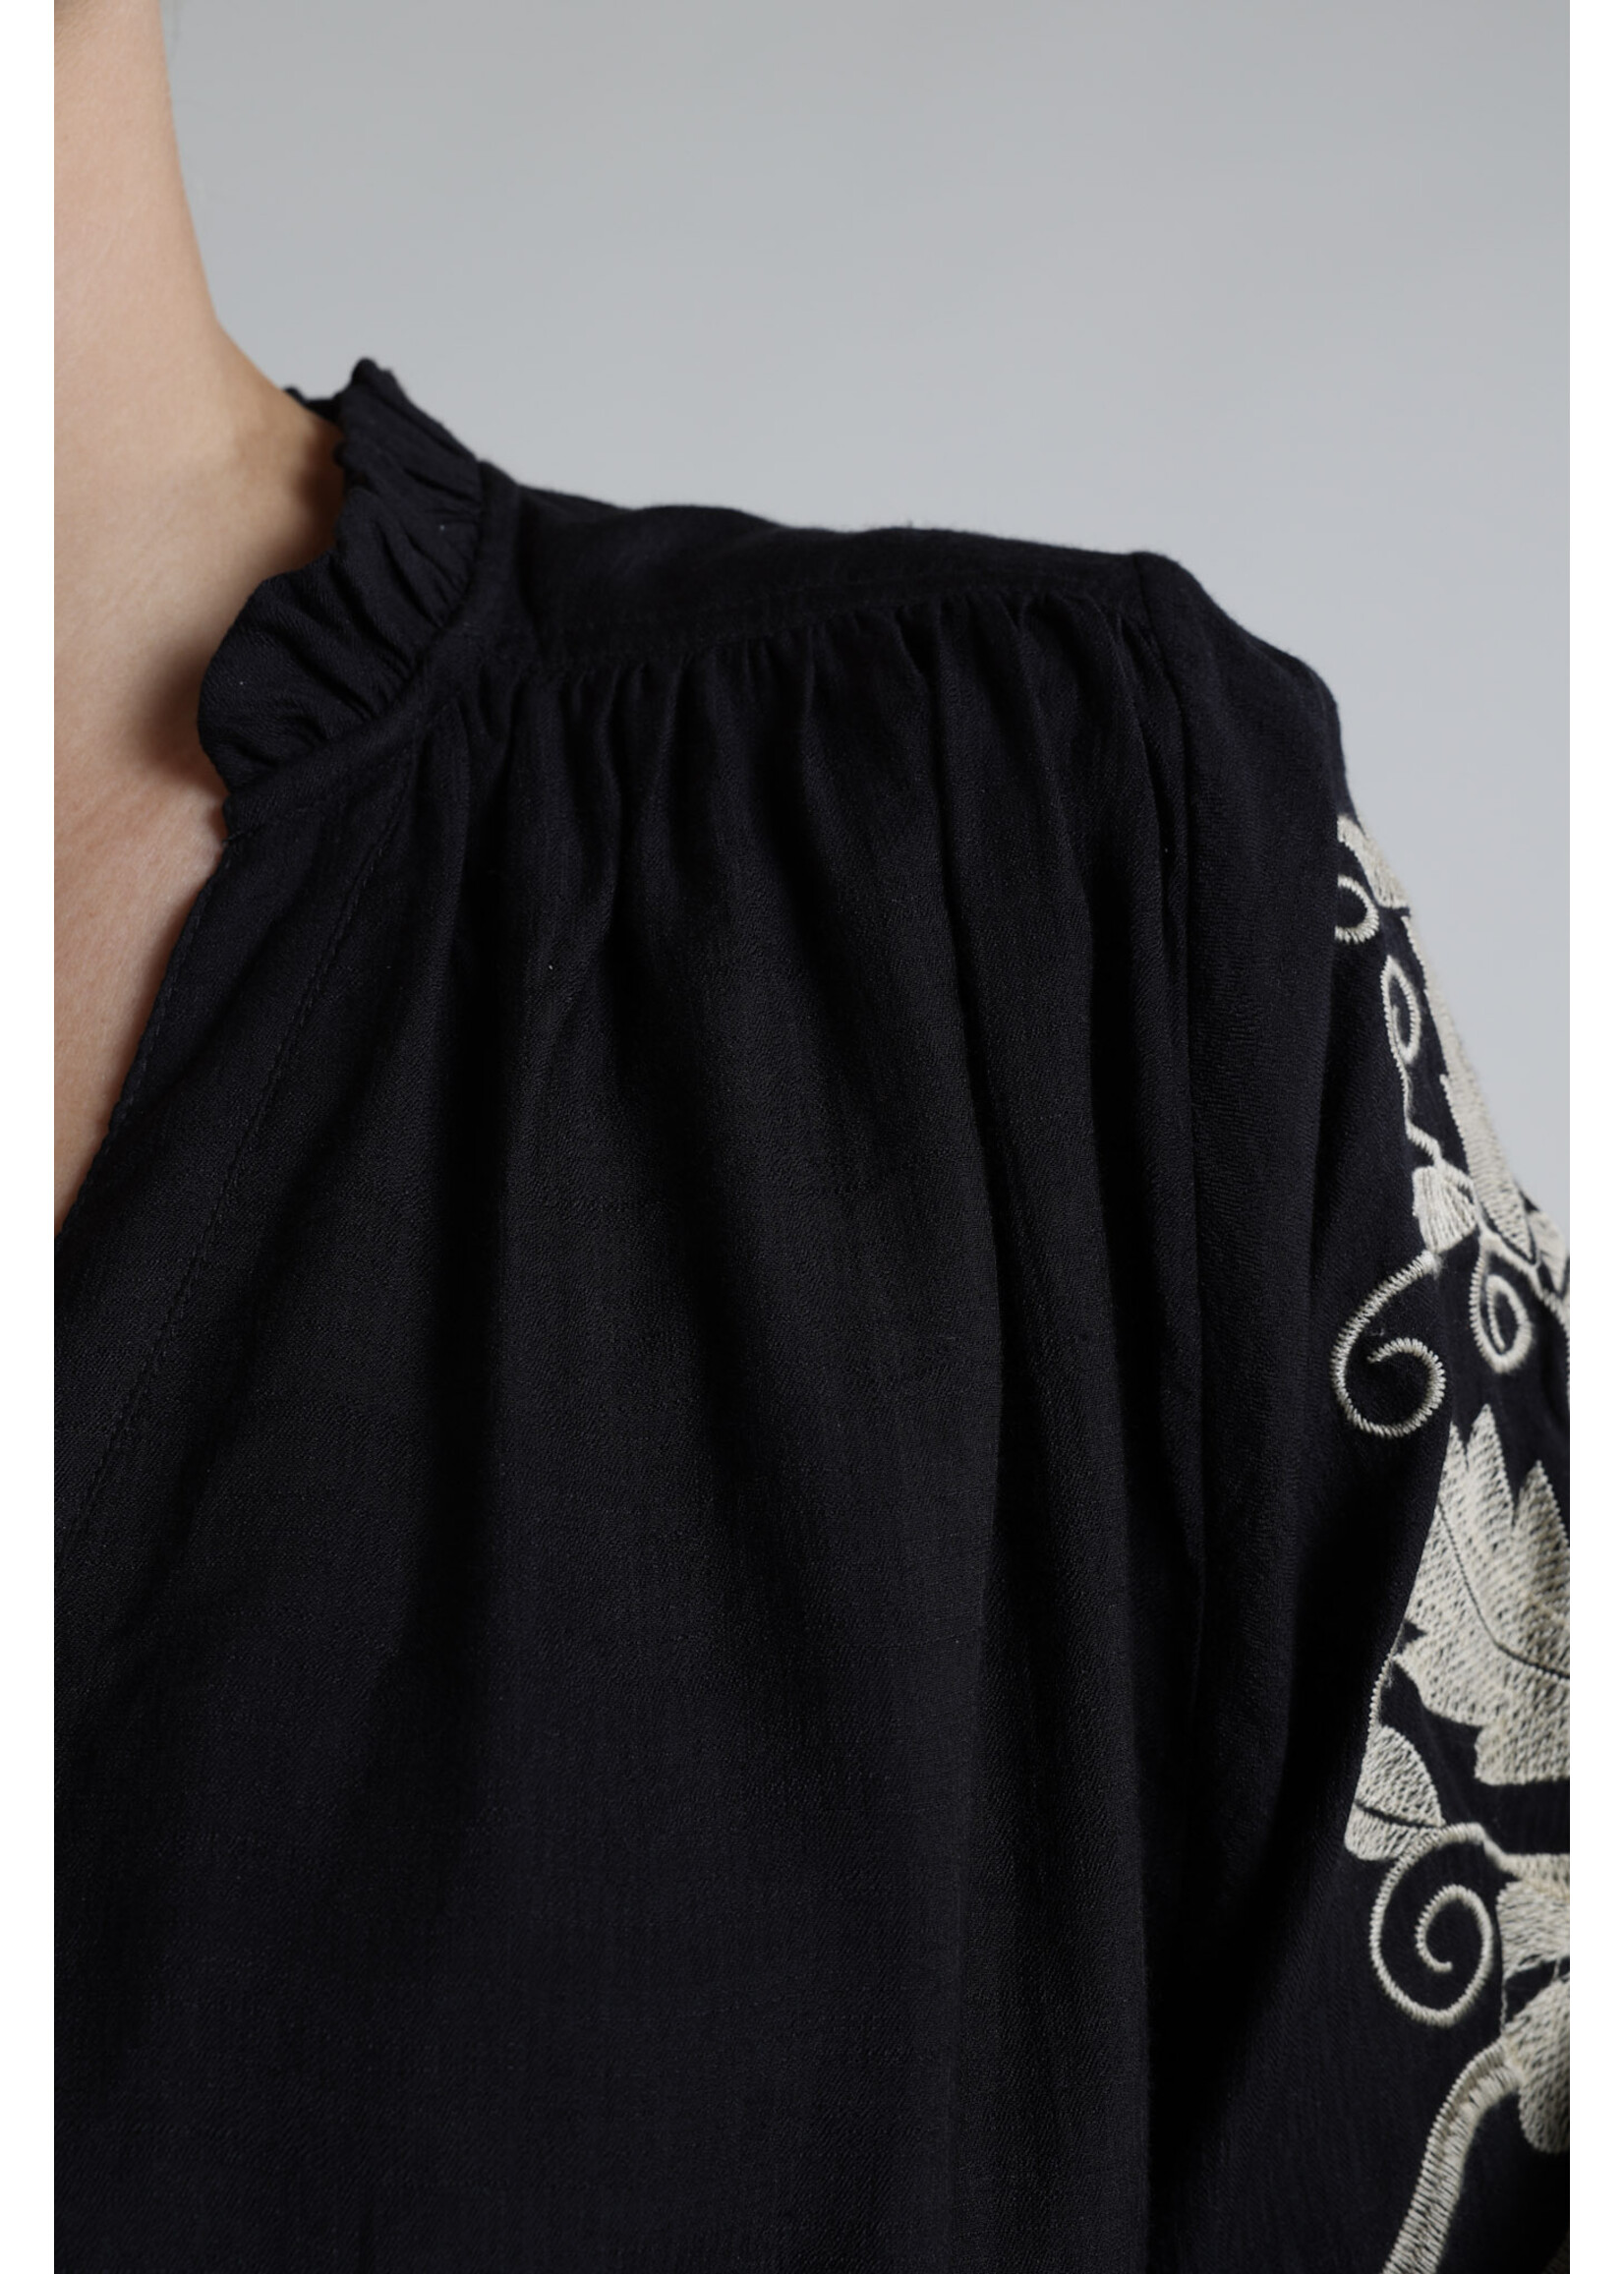 Nukus Nukus, Tina Blouse Embroidery Black, Size: